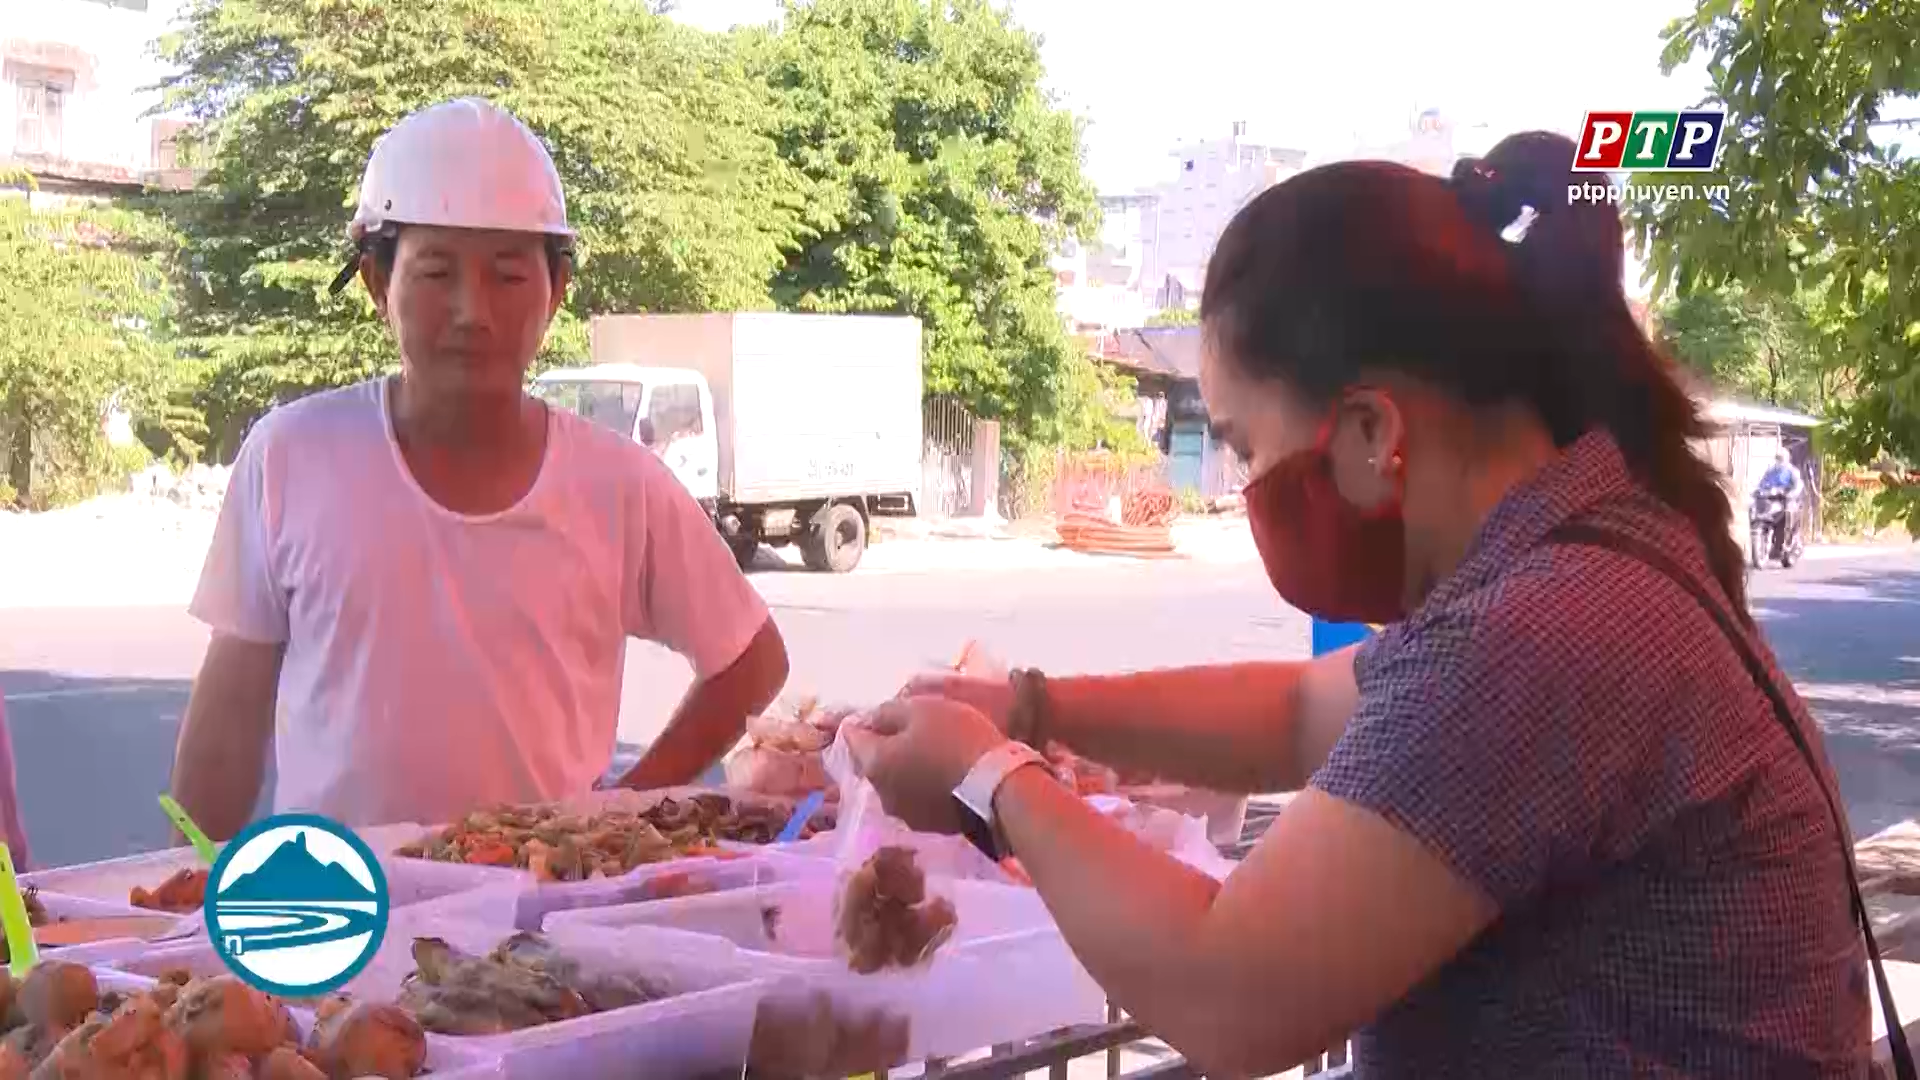 Ý nghĩa mô hình quán ăn chay vì cộng đồng của chị em phụ nữ phường 5, thành phố Tuy Hòa